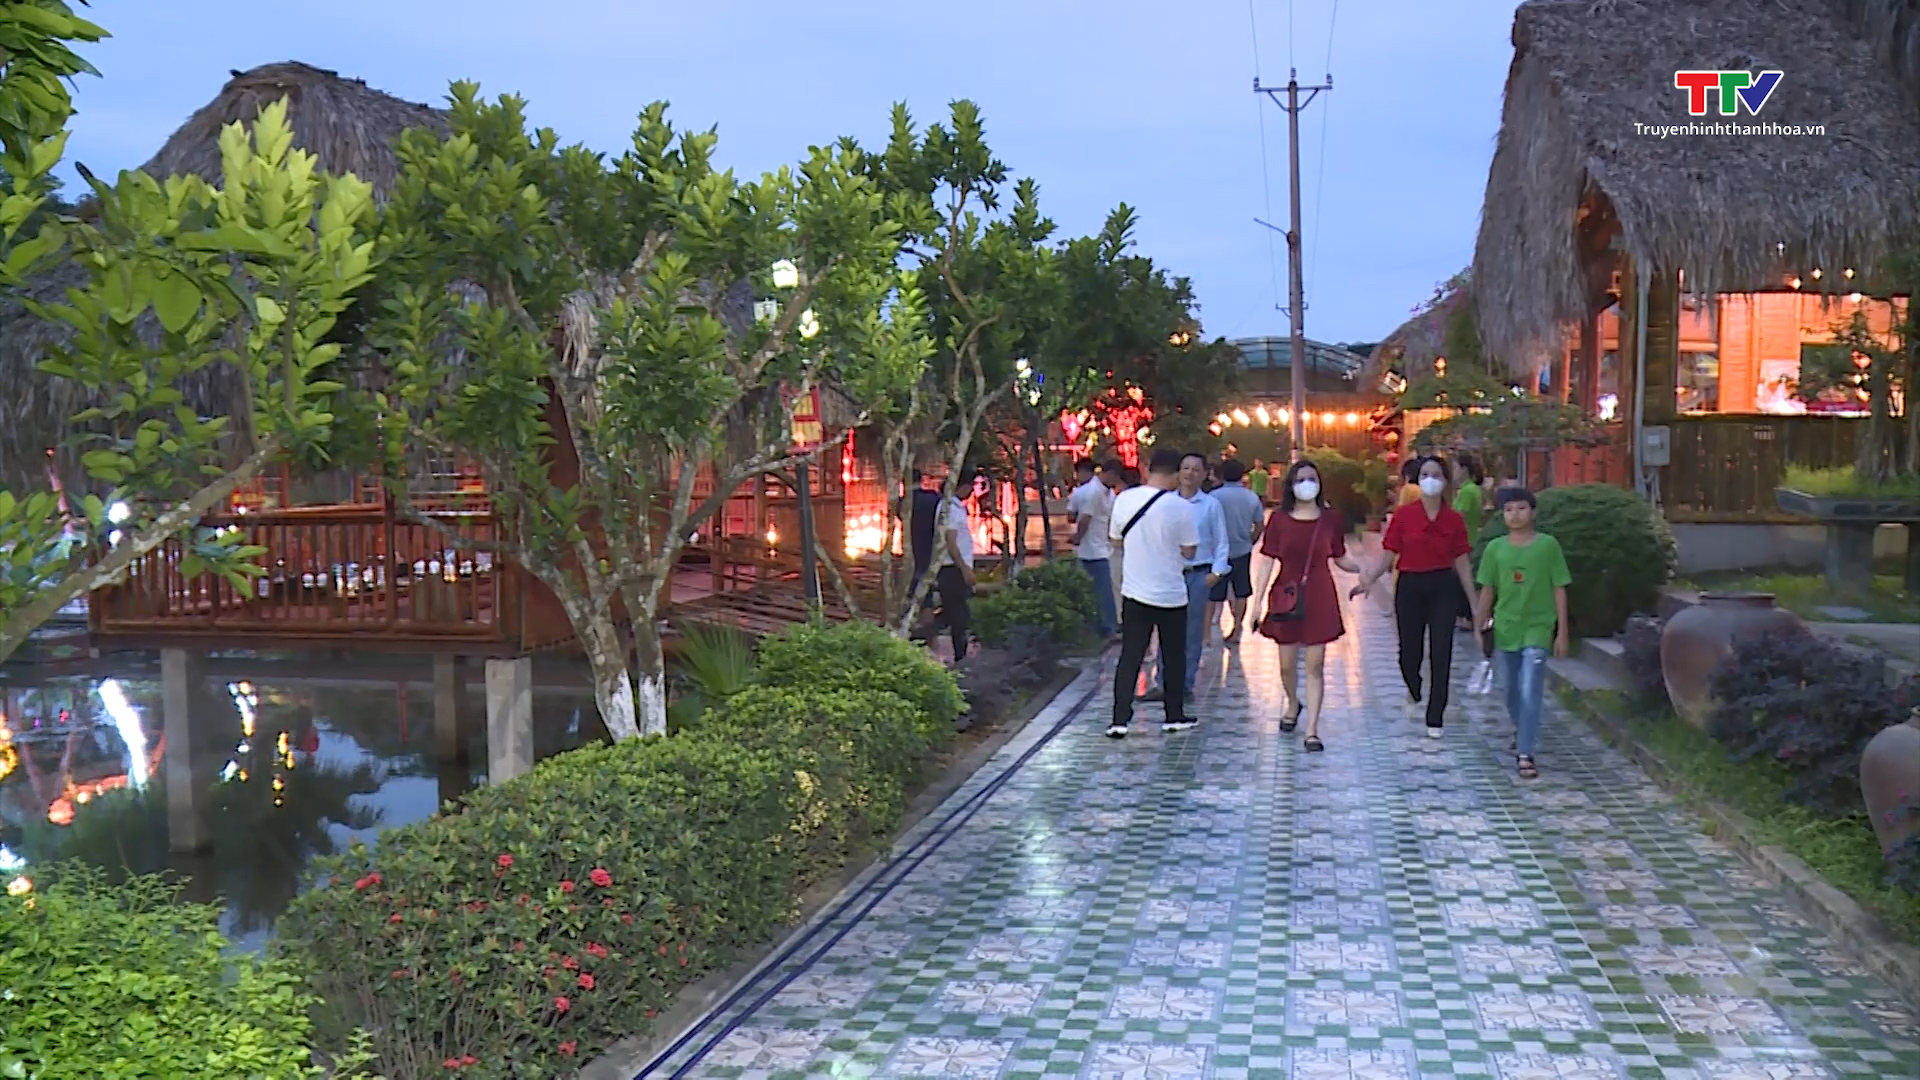 Xu hướng thiết kế không gian mở tại các nhà hàng trên địa bàn thành phố Thanh Hóa - Ảnh 3.